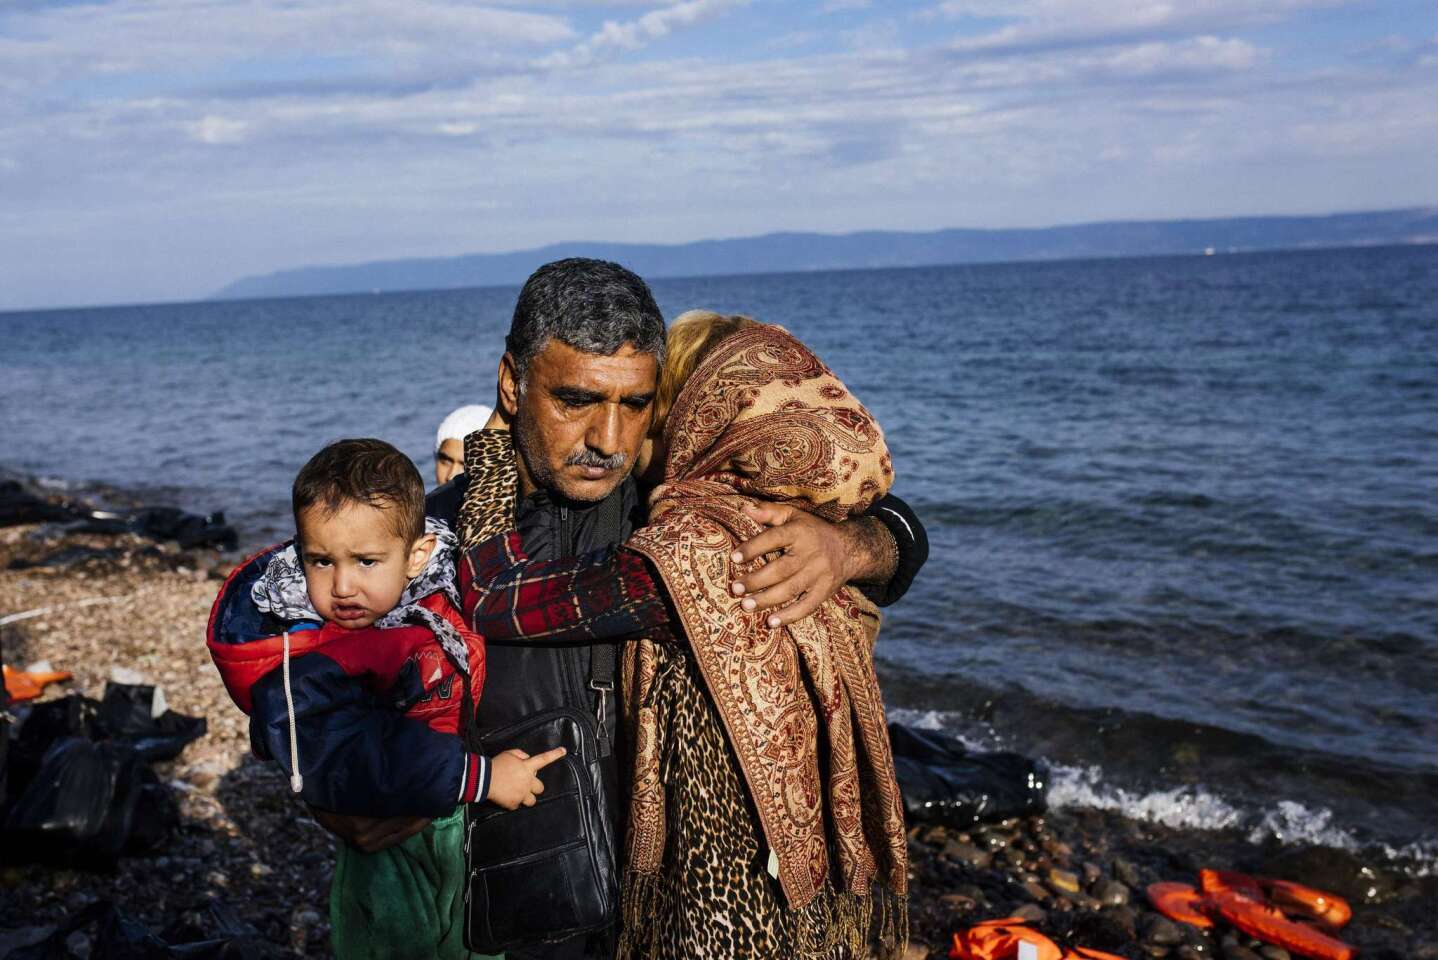 Migrant crisis in Europe